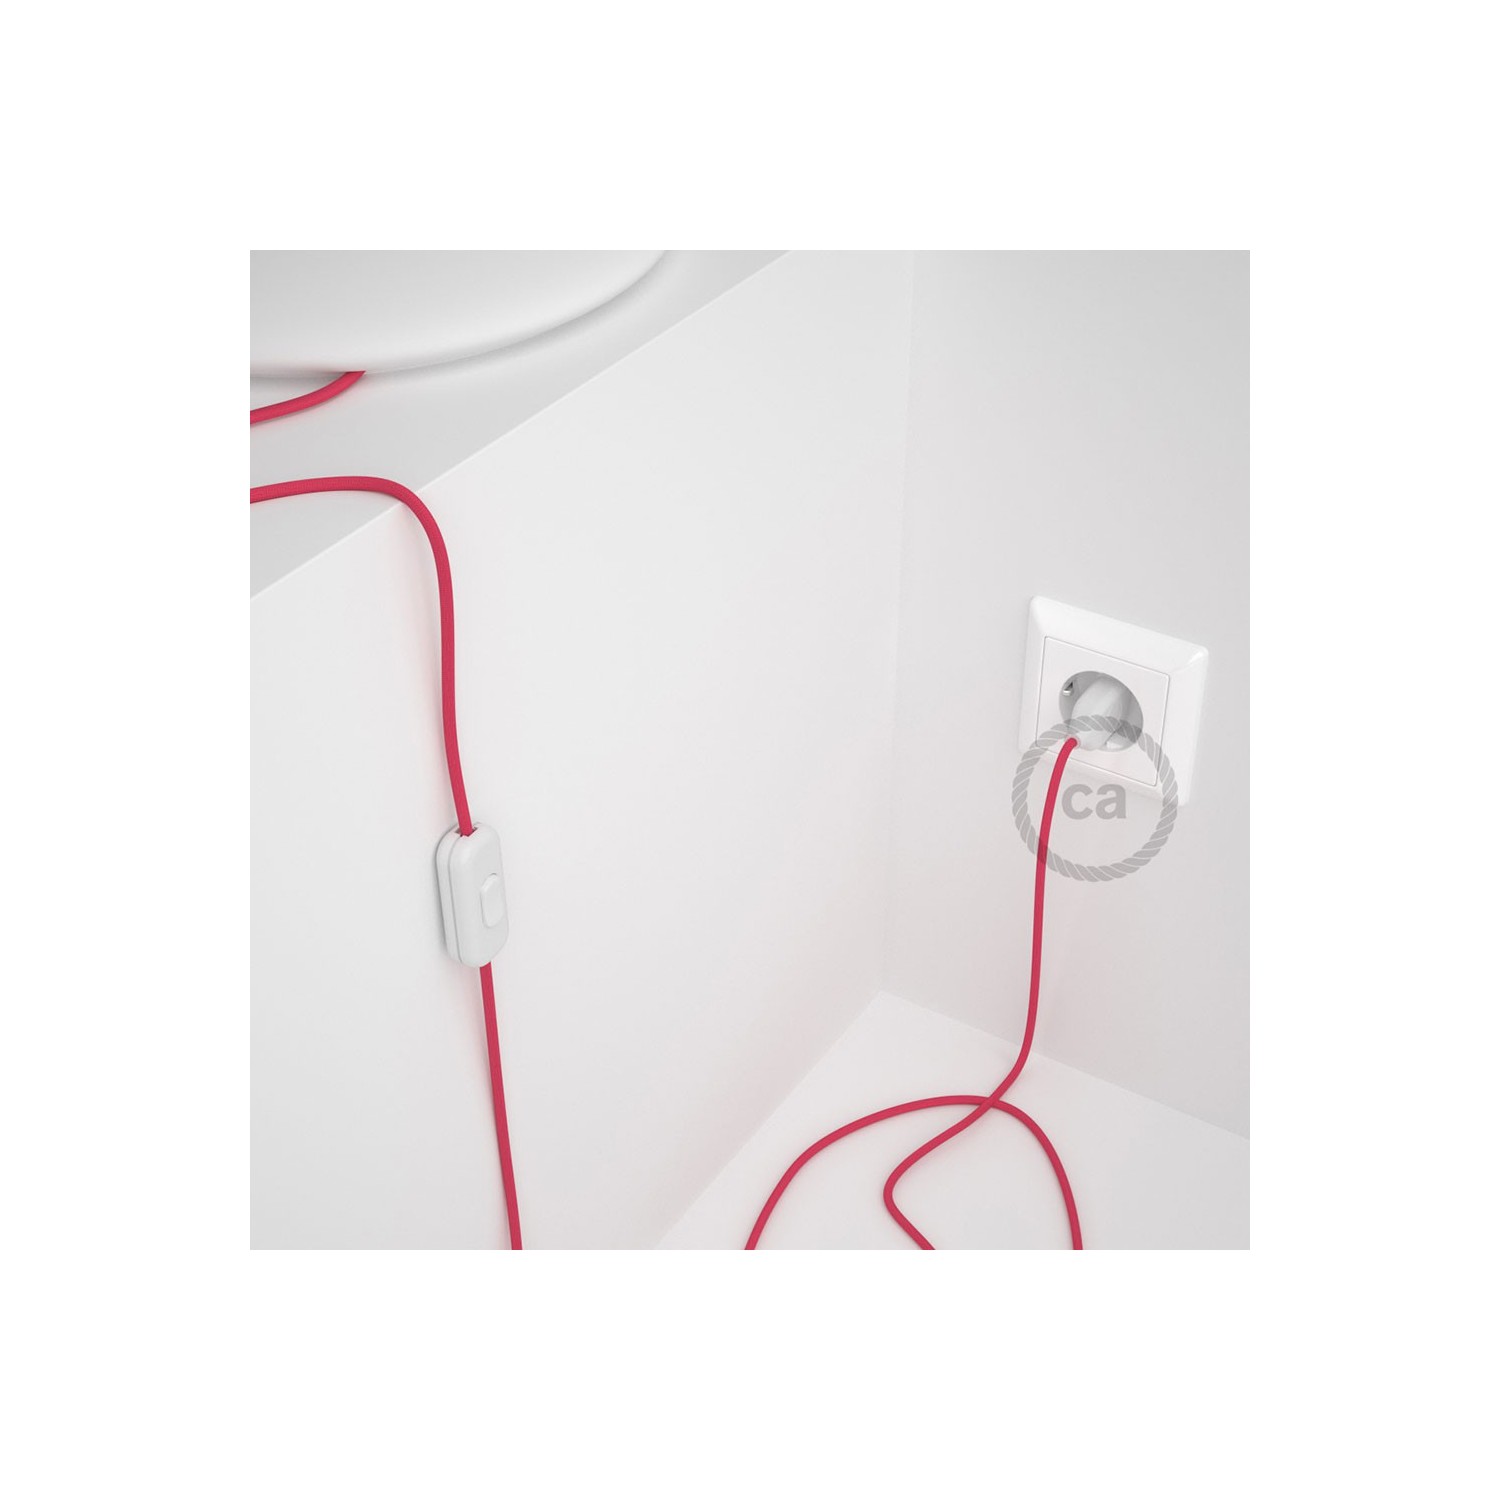 Cordon pour lampe, câble RM08 Effet Soie Fuchsia 1,80 m. Choisissez la couleur de la fiche et de l'interrupteur!